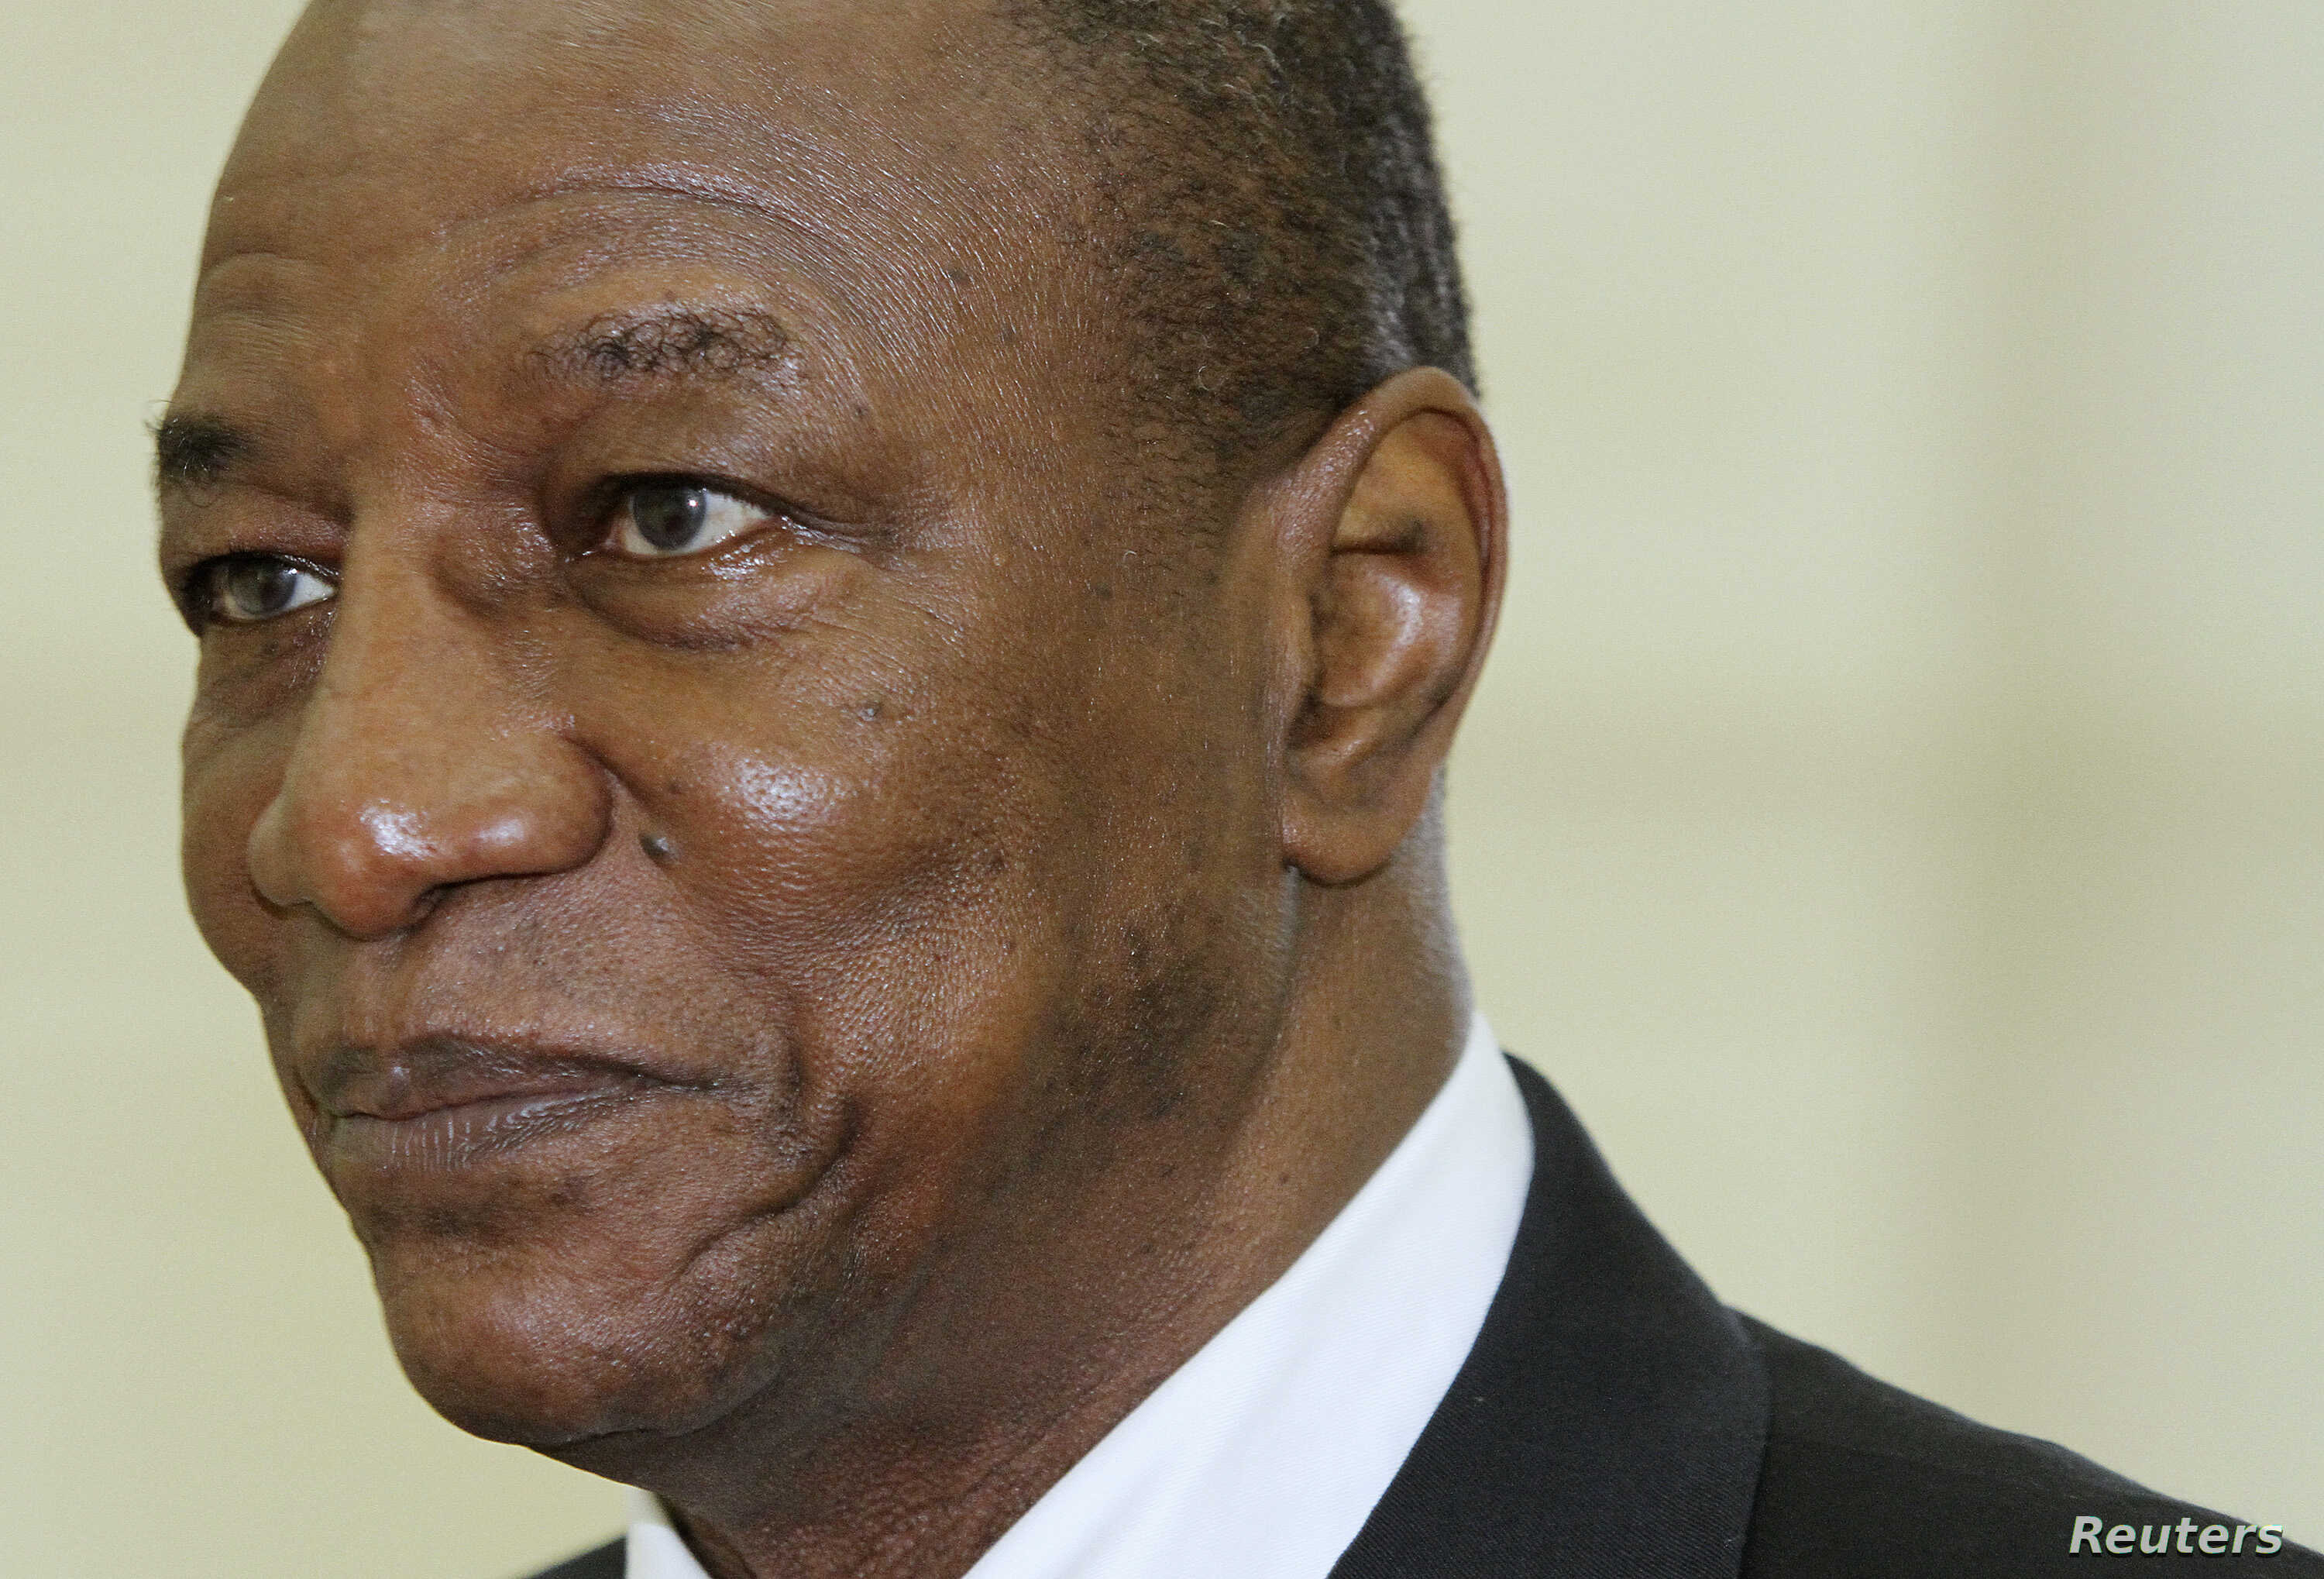 Reportan que el presidente de Guinea asegura que prefiere “morir antes de firmar” la carta de su renuncia